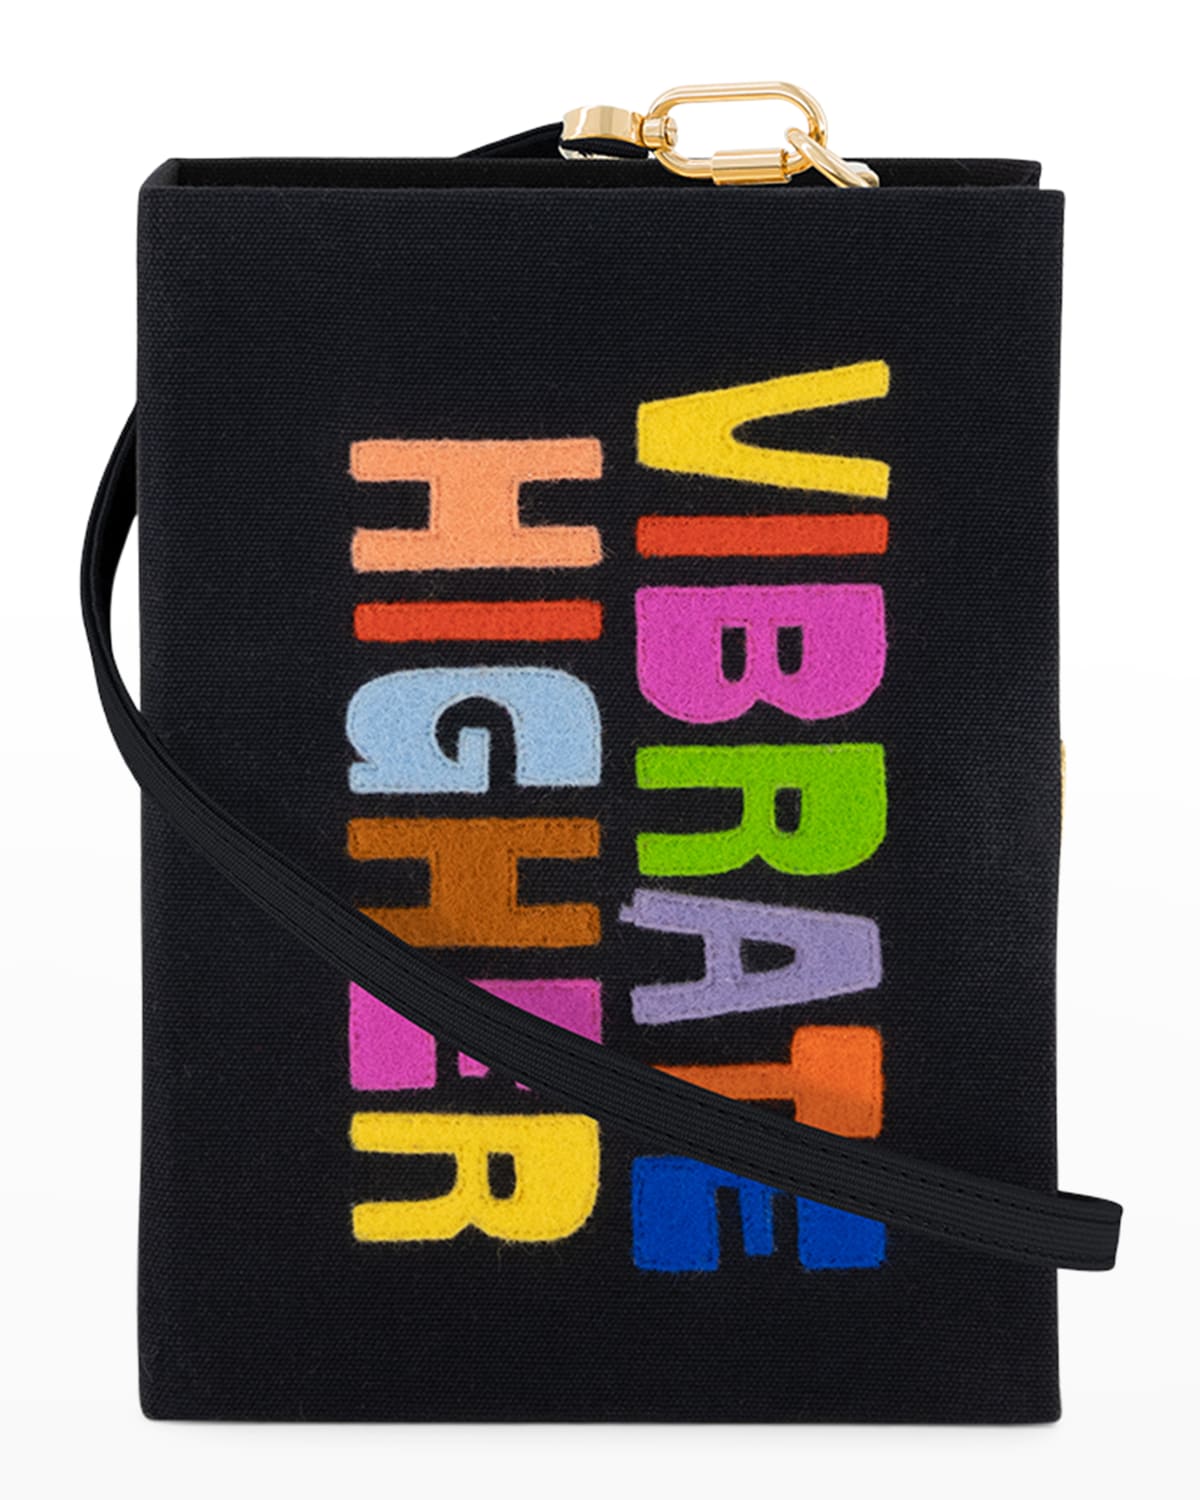 Georgia Perry's Vibrate Higher Book Clutch Bag